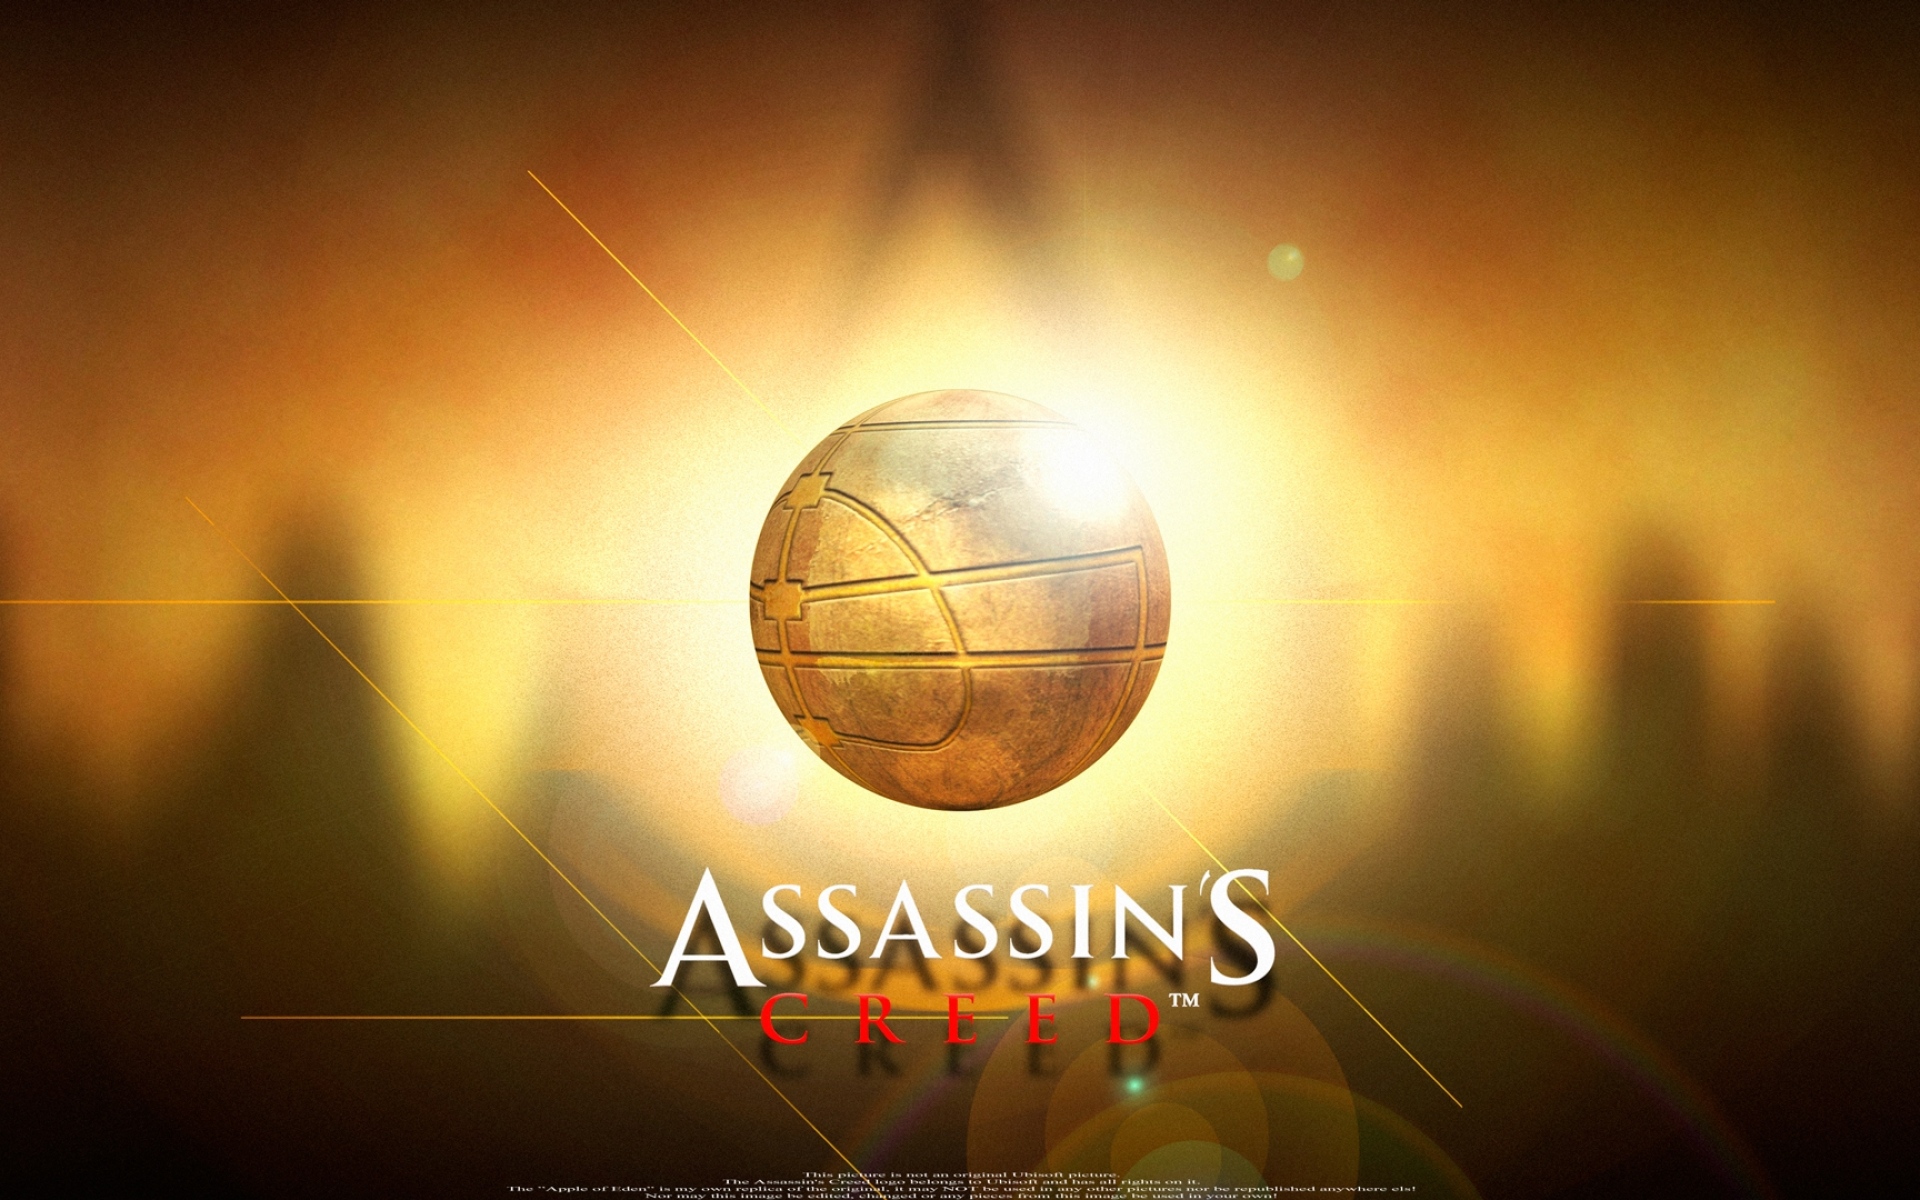 Картинки Assassins Creed, имя, игра, мяч, графика, свет фото и обои на рабочий стол